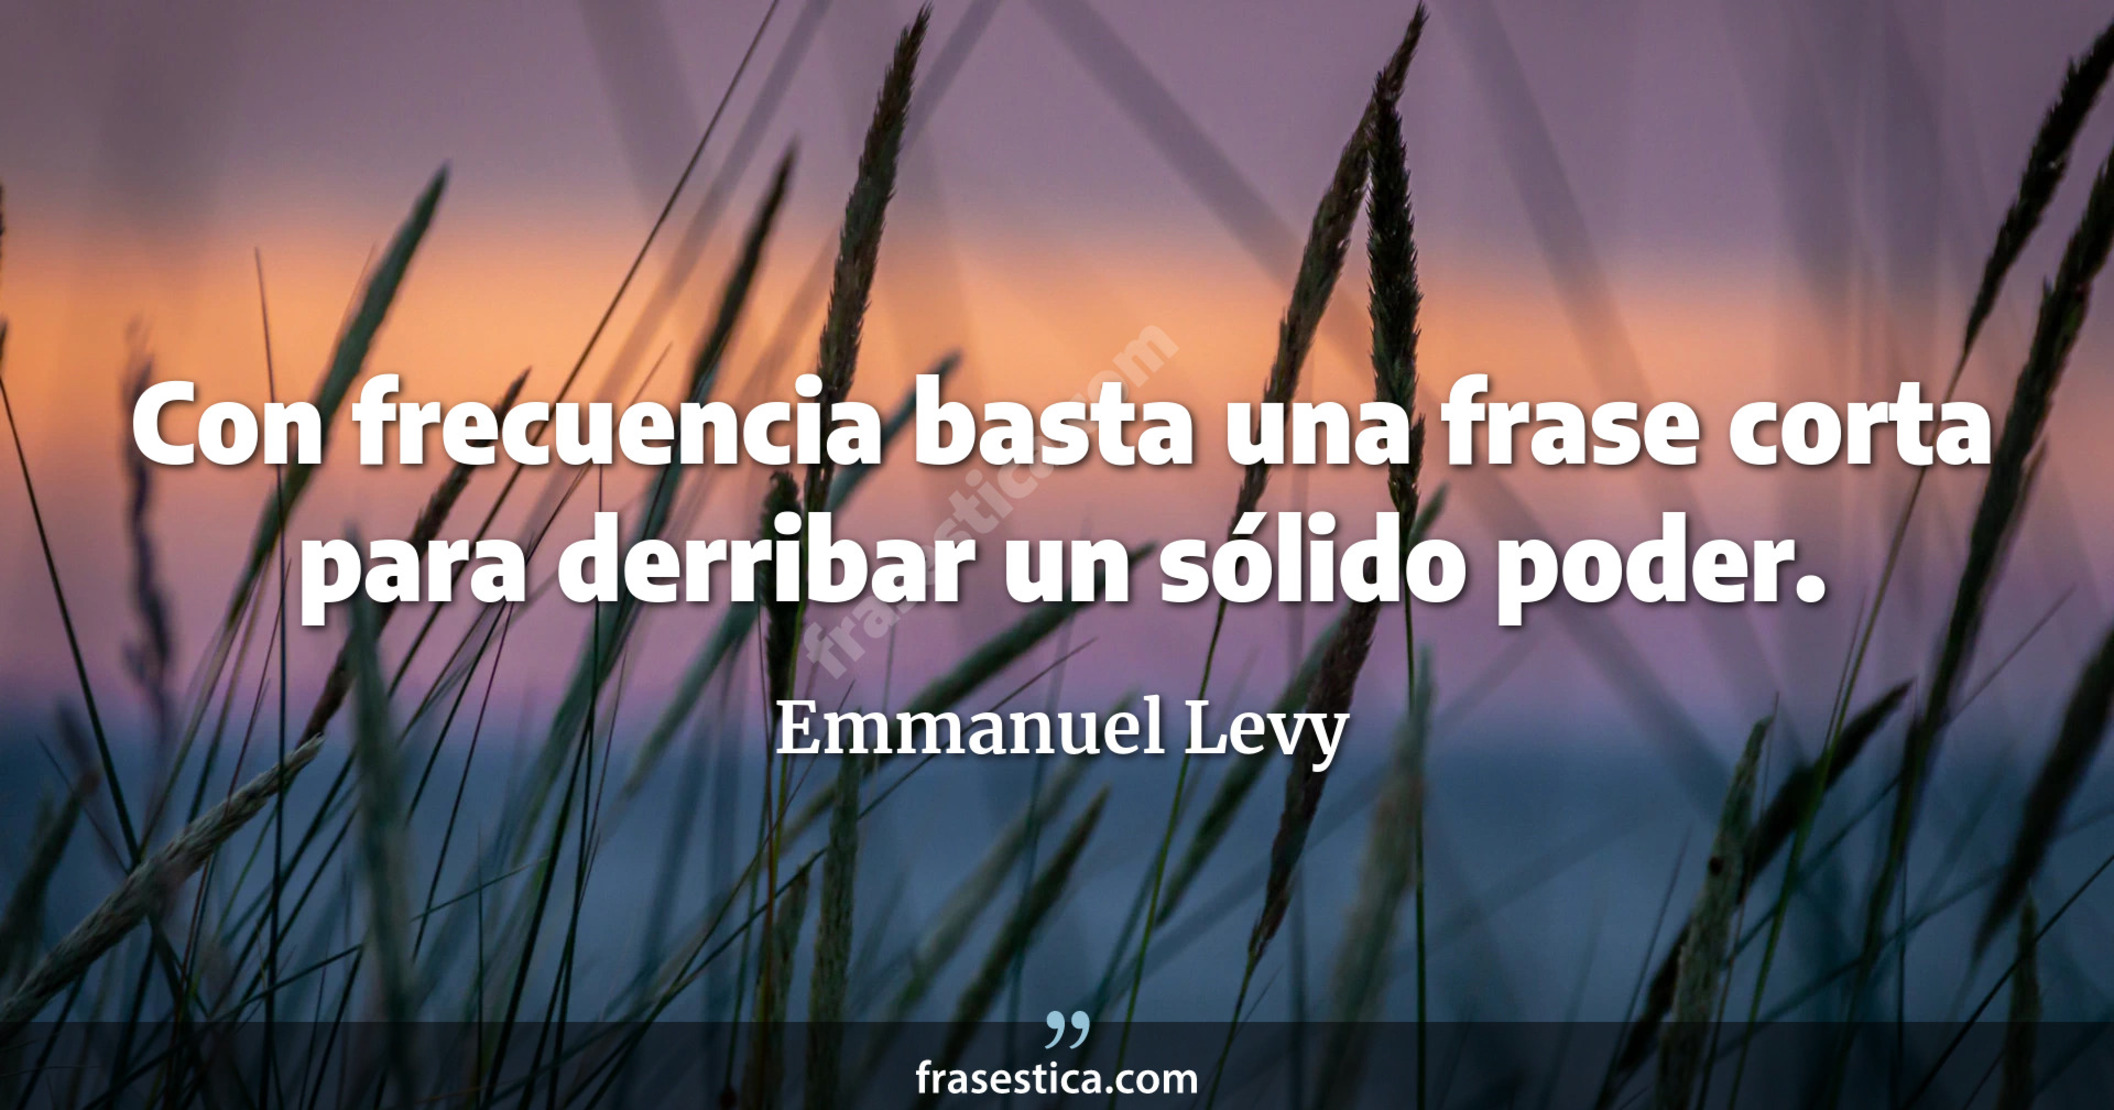 Con frecuencia basta una frase corta para derribar un sólido poder.  - Emmanuel Levy